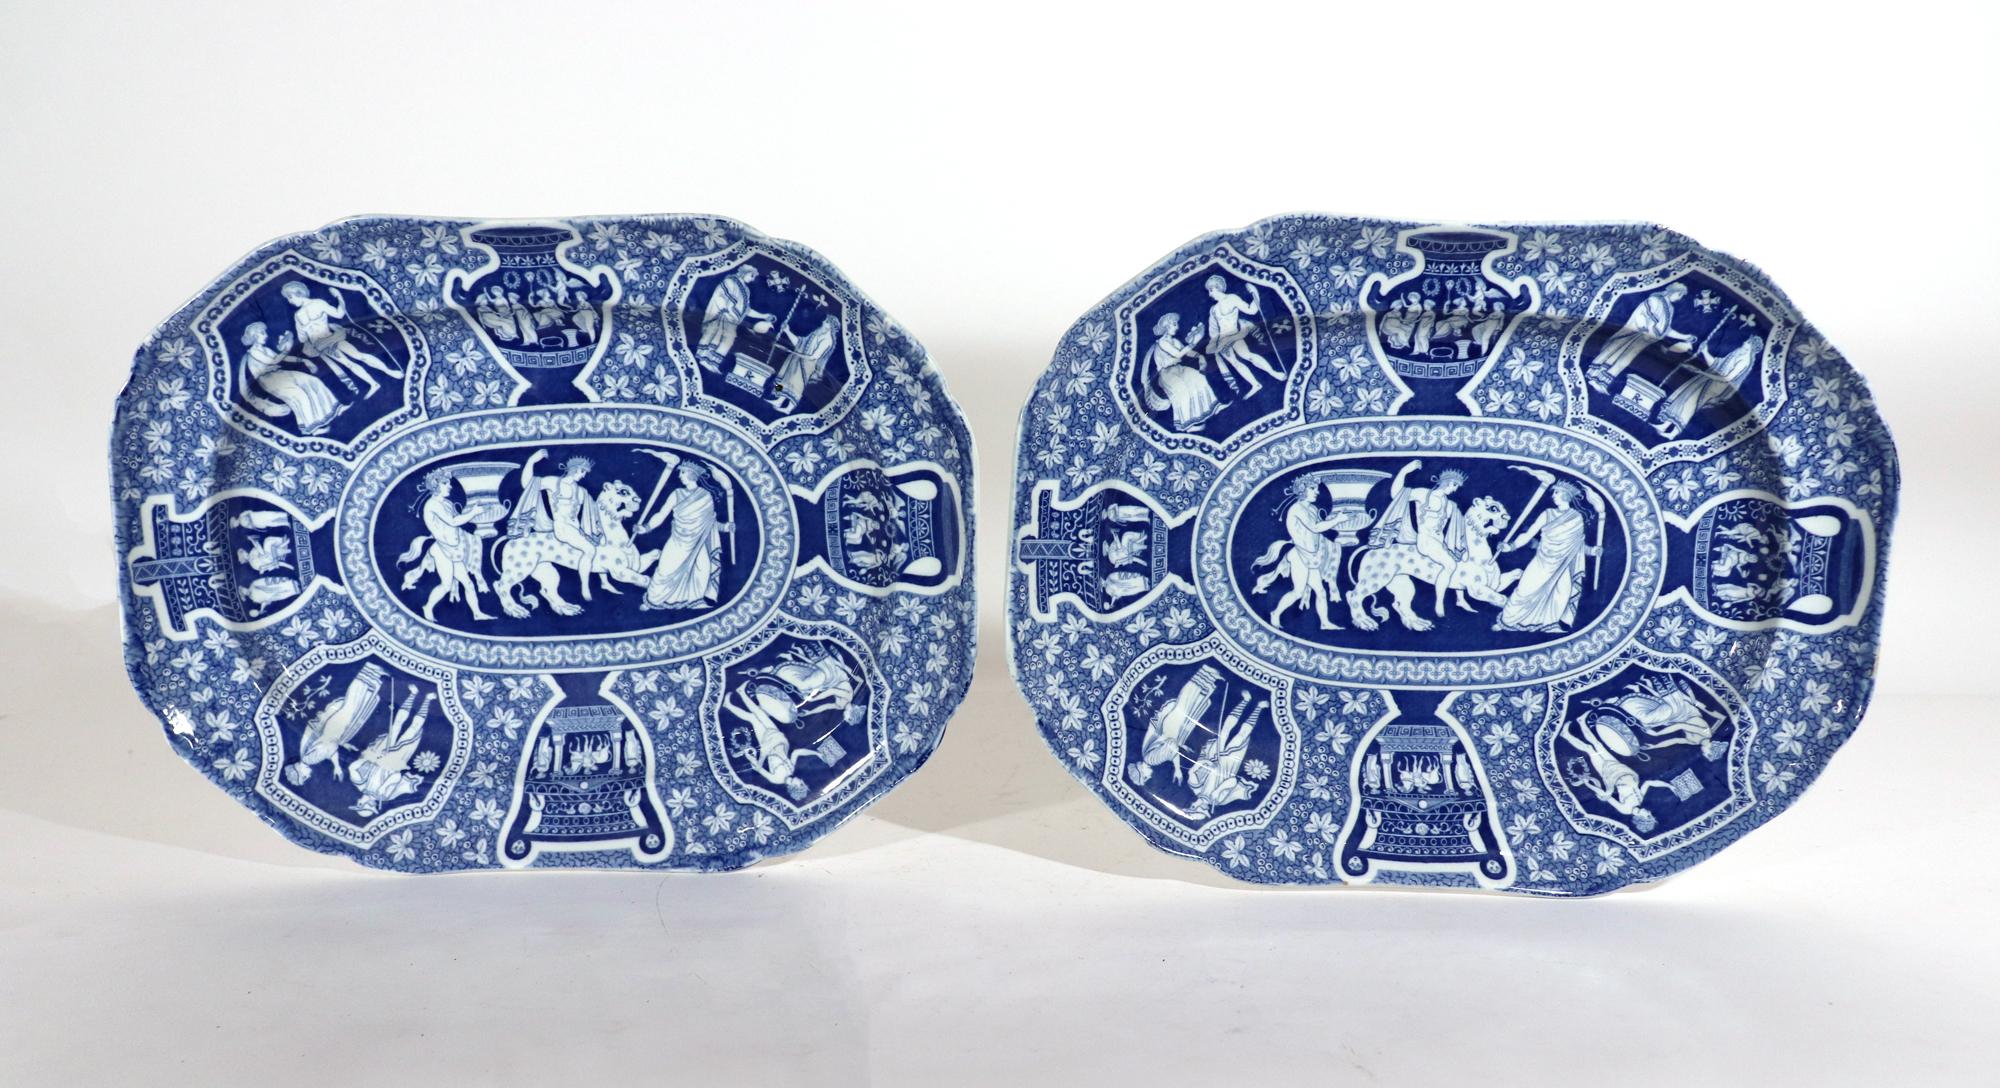 Paire de plats bleus à motif grec néoclassique en poterie Spode,
Bacchus monté sur une panthère,
Début du 19e siècle 

Les plats rectangulaires à coins cannelés de la poterie Spode à motif grec sont imprimés en bleu de scènes néoclassiques sur